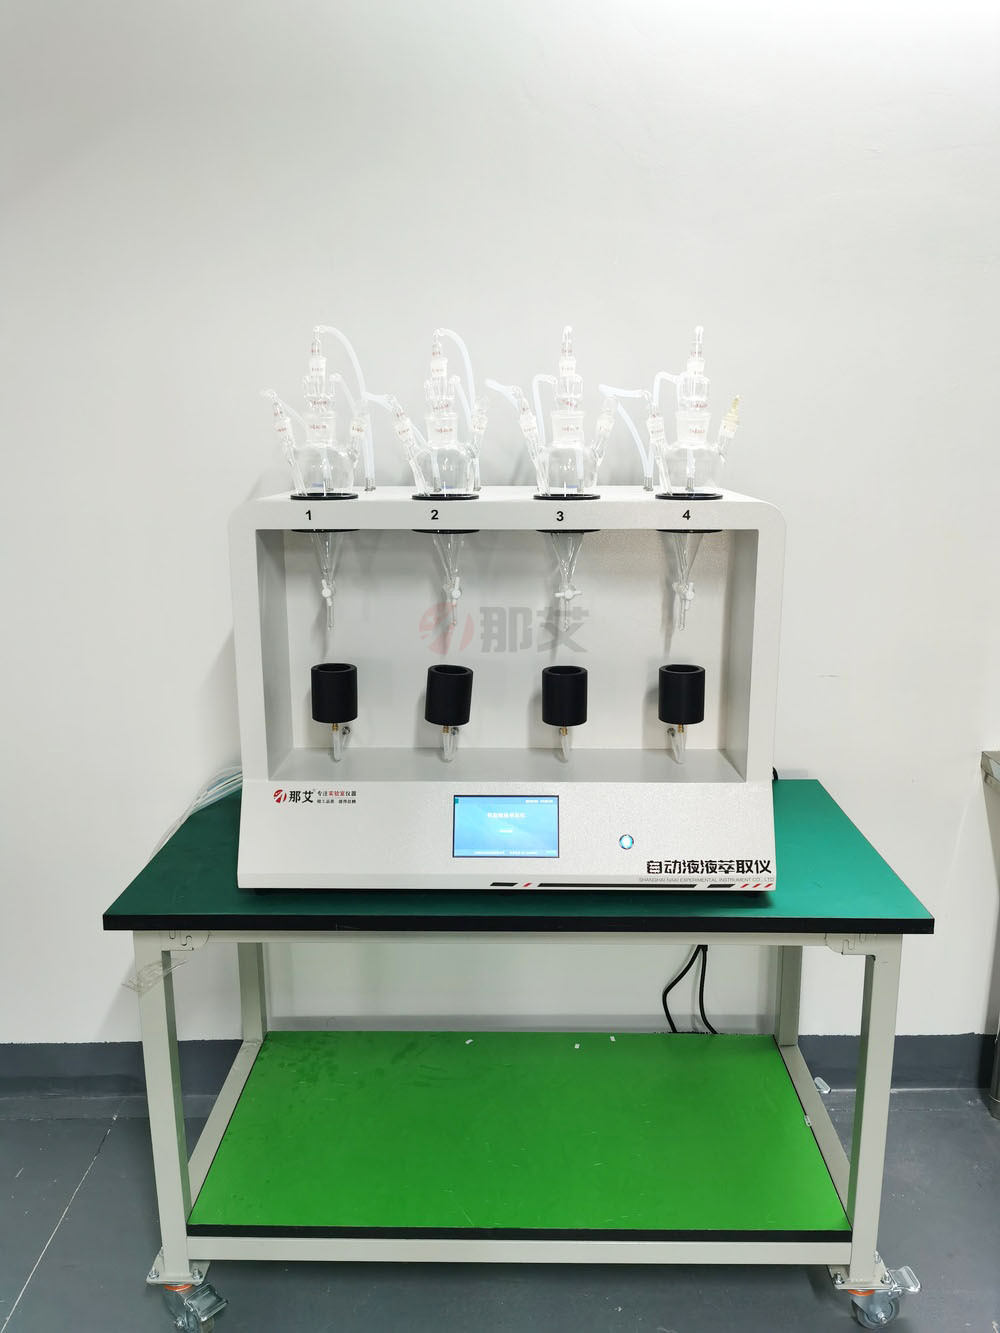 液液萃取的优点,水中15种硝基苯类化合物的液液萃取和固相萃取气相色谱测定方法。15种硝基苯类化合物